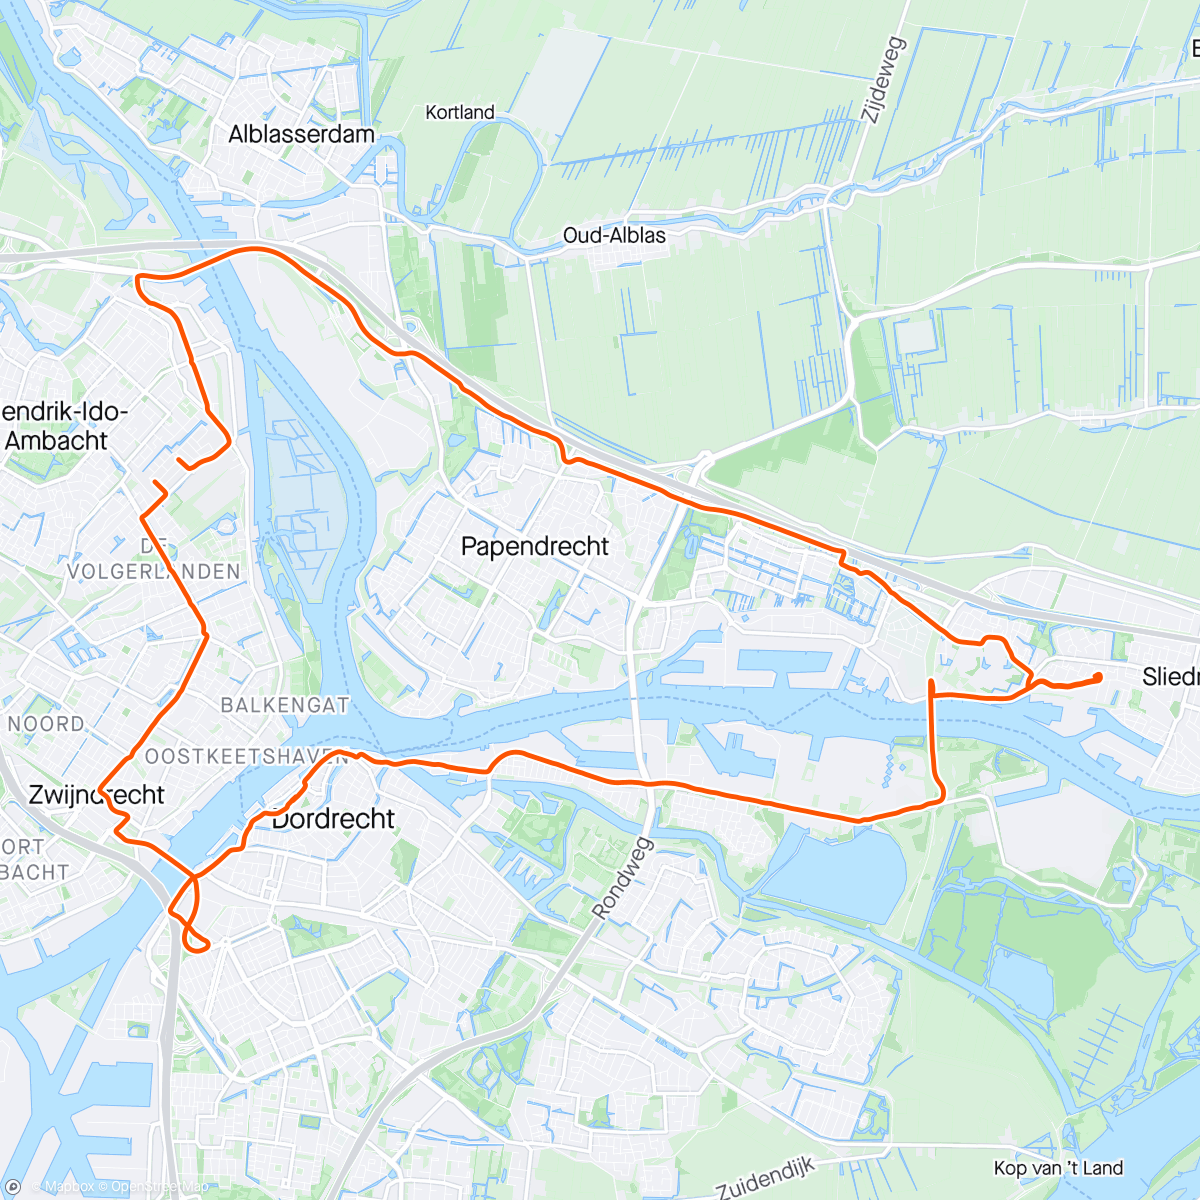 Карта физической активности (Sliedrecht - Dordrecht met als tussenstop rondje varen met broer Kees.)